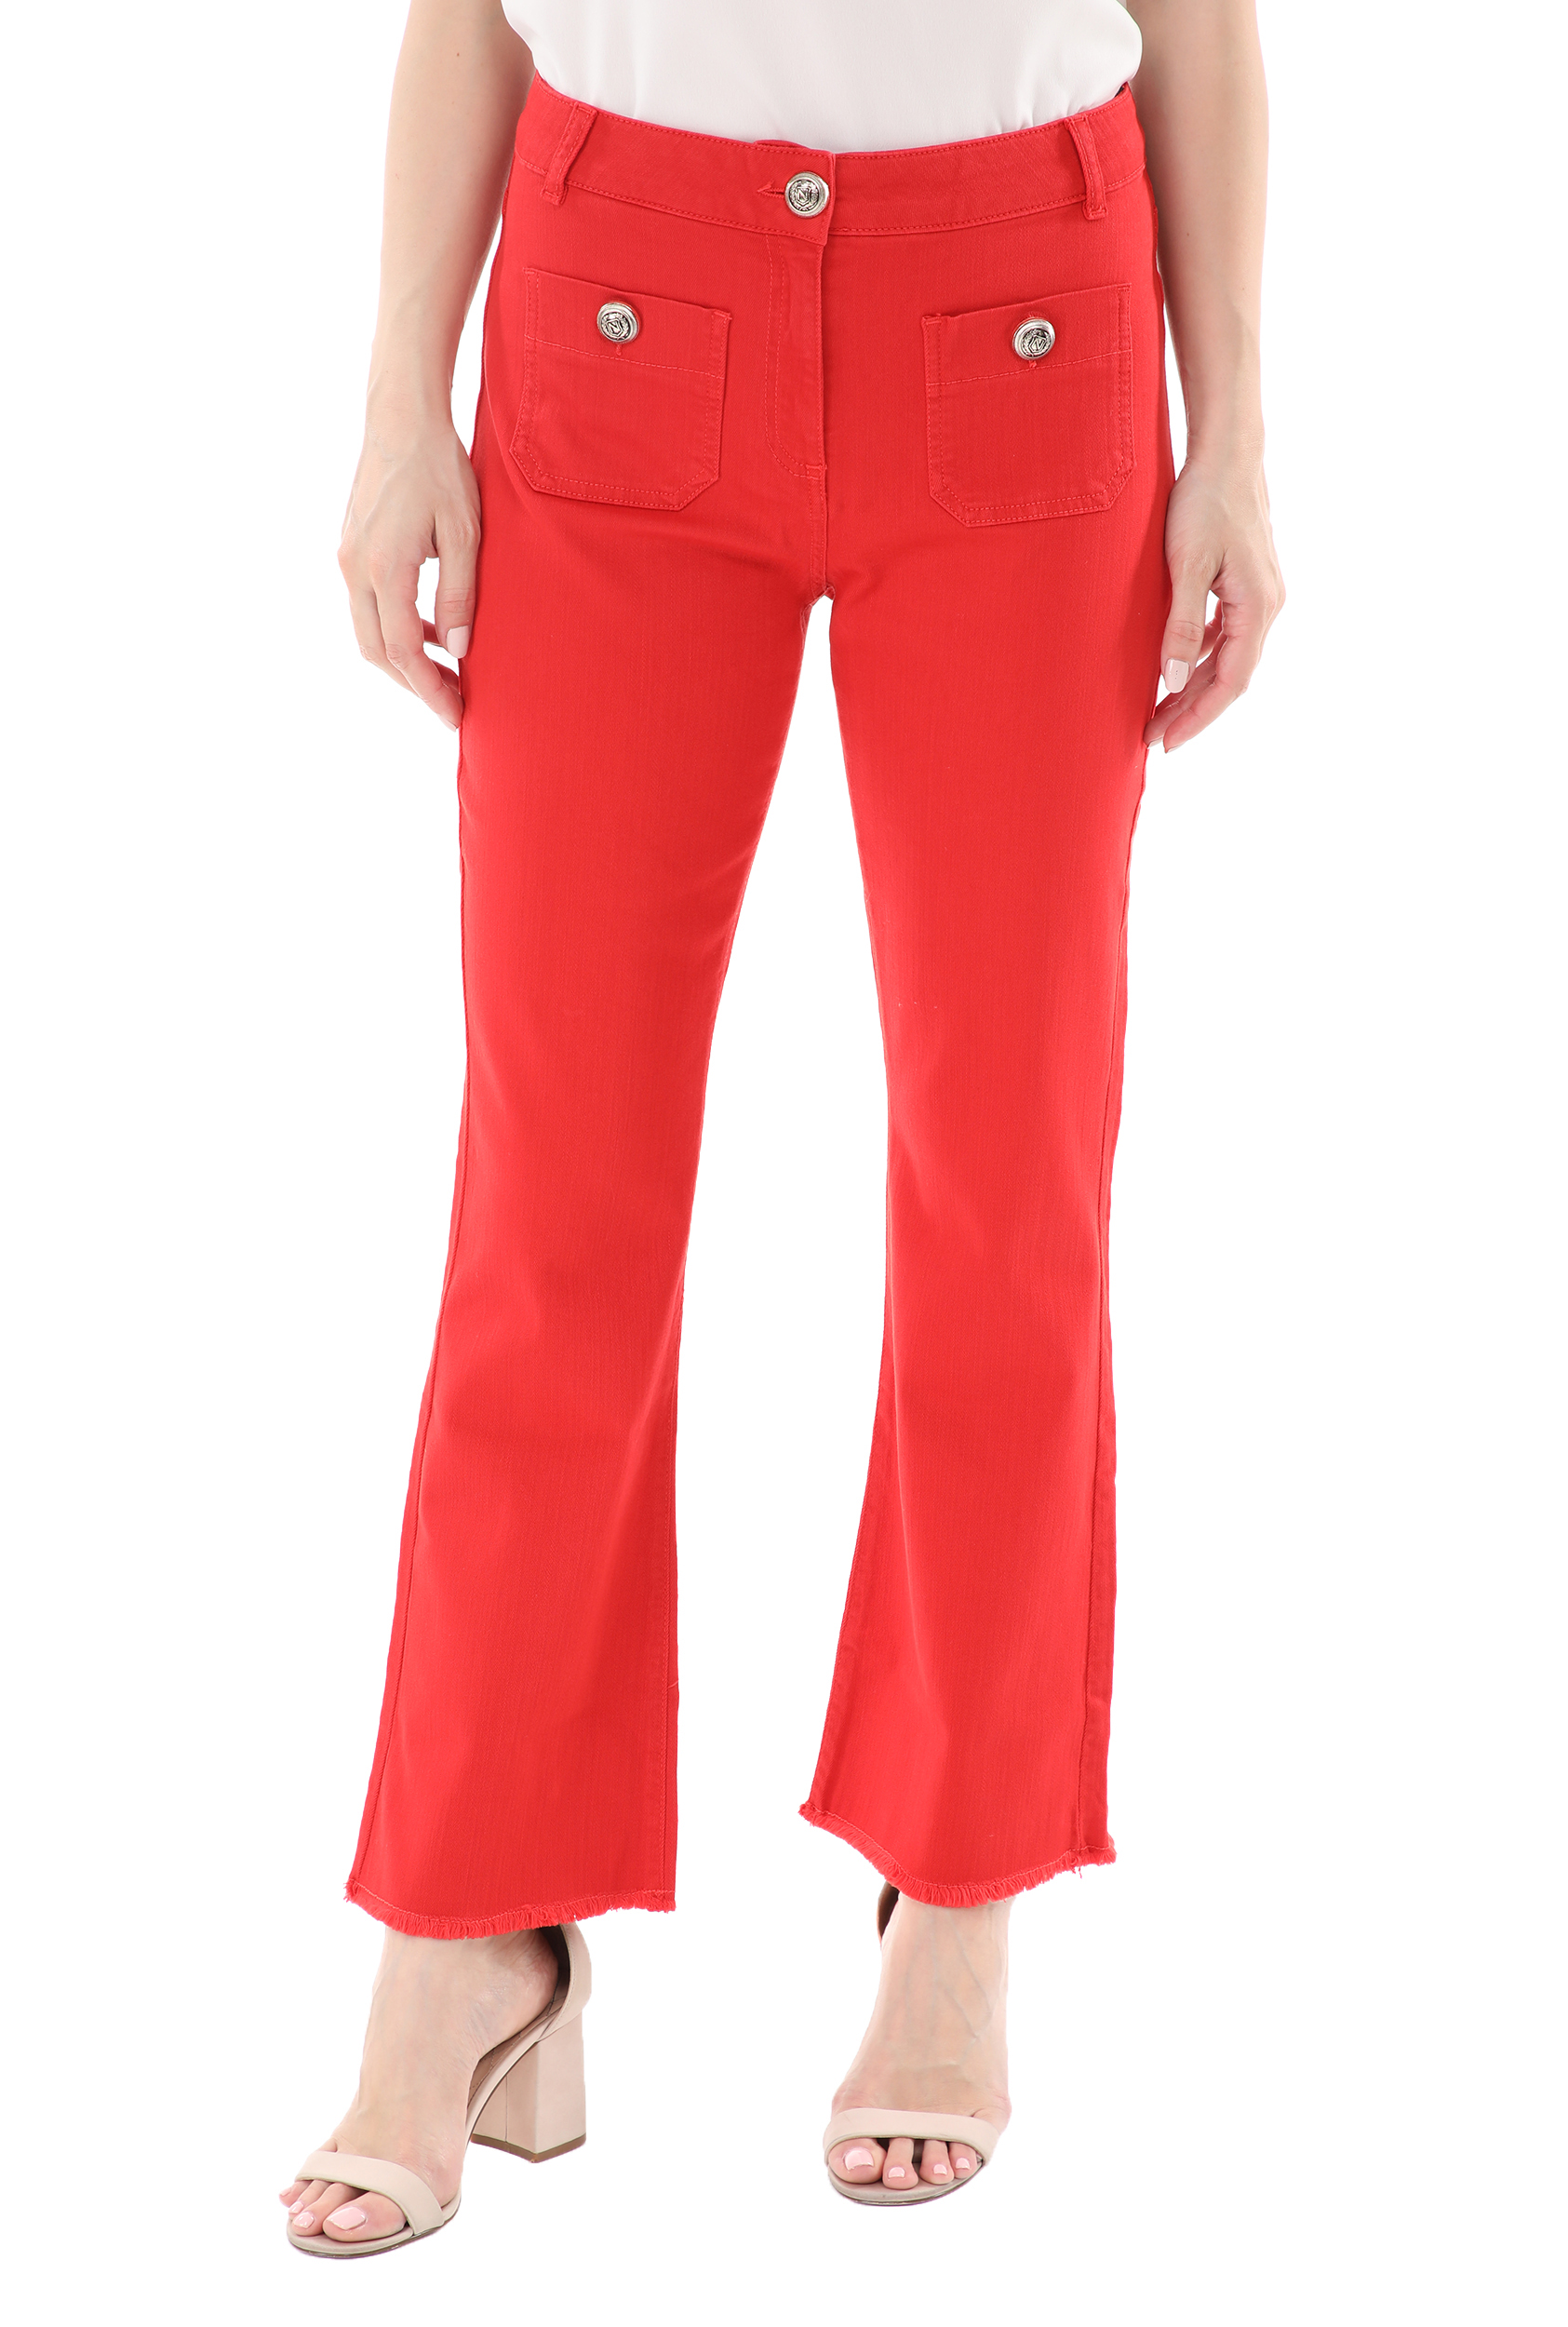 Γυναικεία/Ρούχα/Παντελόνια/Καμπάνες NENETTE - Γυναικείο παντελόνι NENETTE J-SOLE PANT TROMBETTA TINTO CAPO κόκκινο